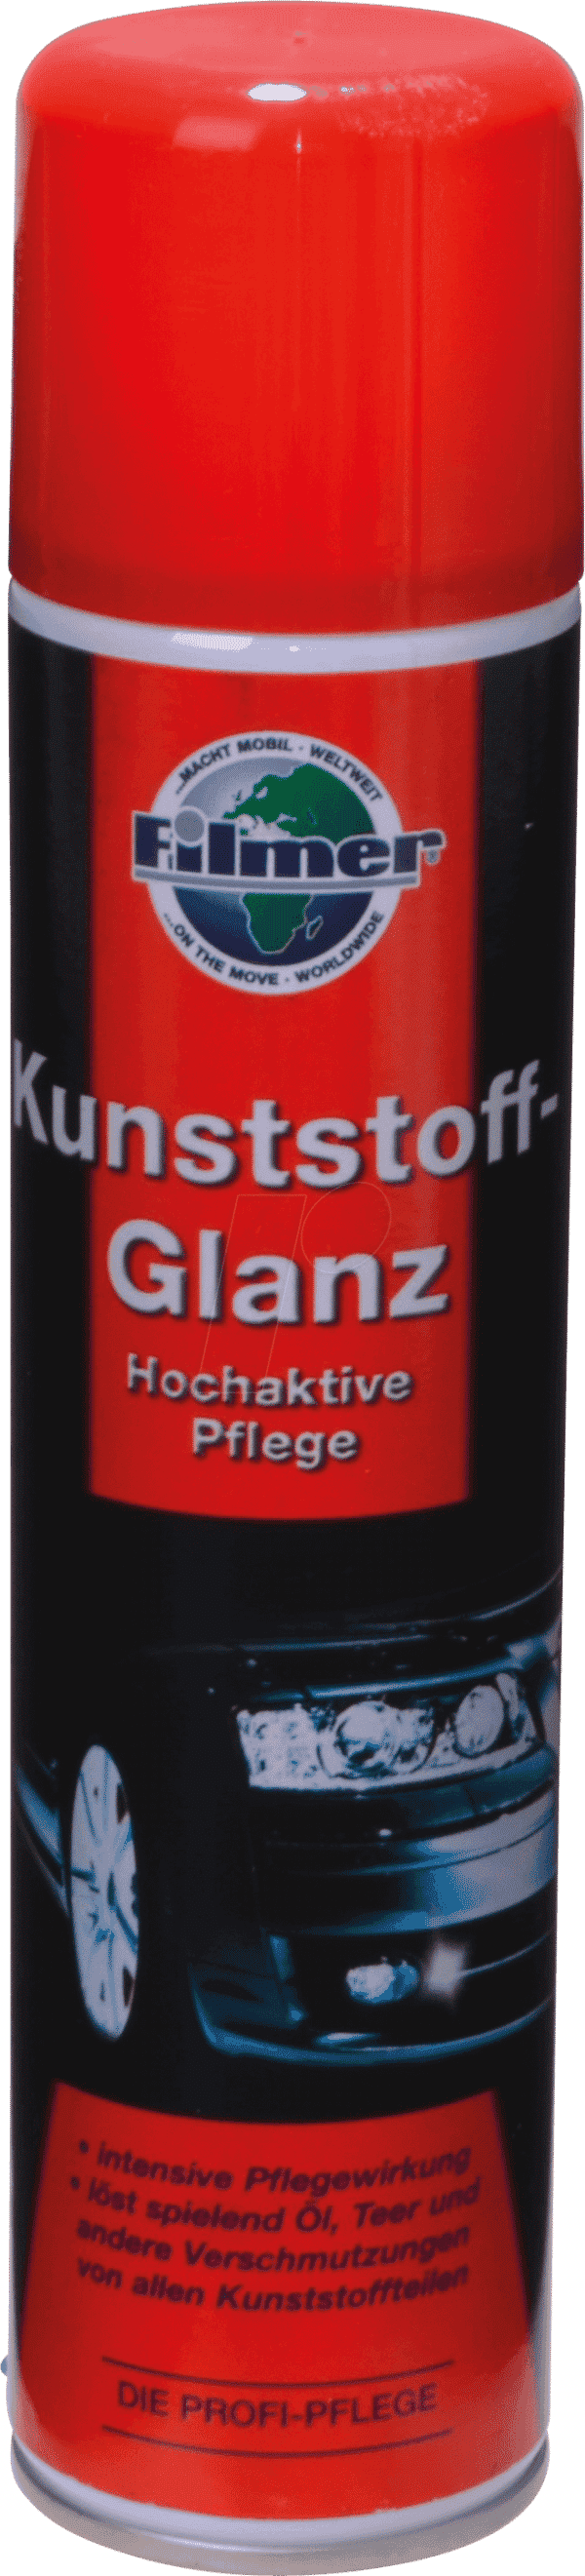 KFZ 61122 - KFZ - Kunststoffglanz-Spray